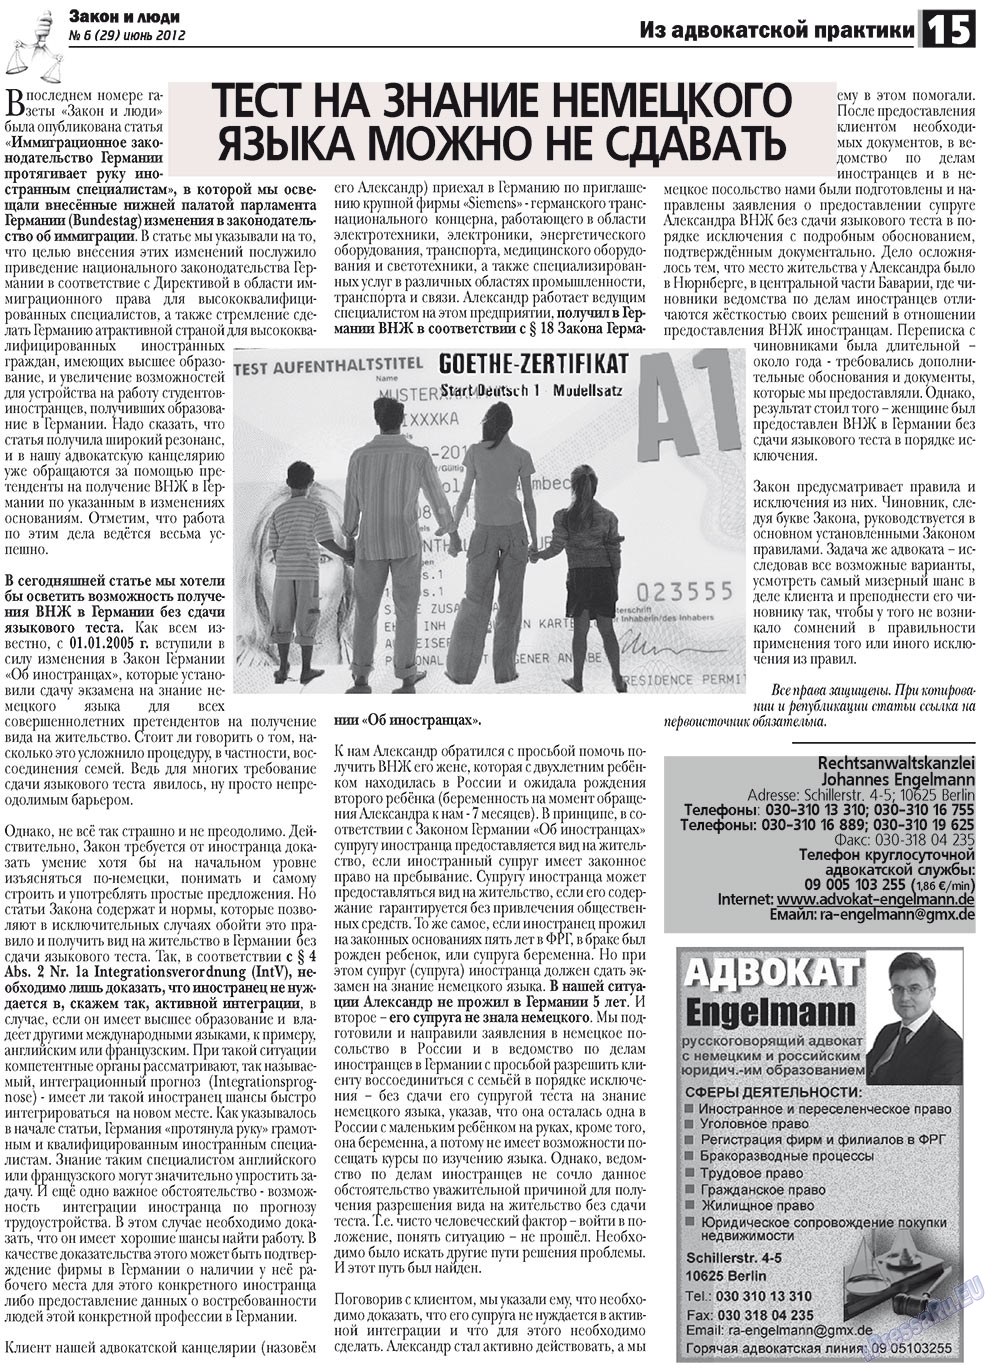 Закон и люди, газета. 2012 №6 стр.15